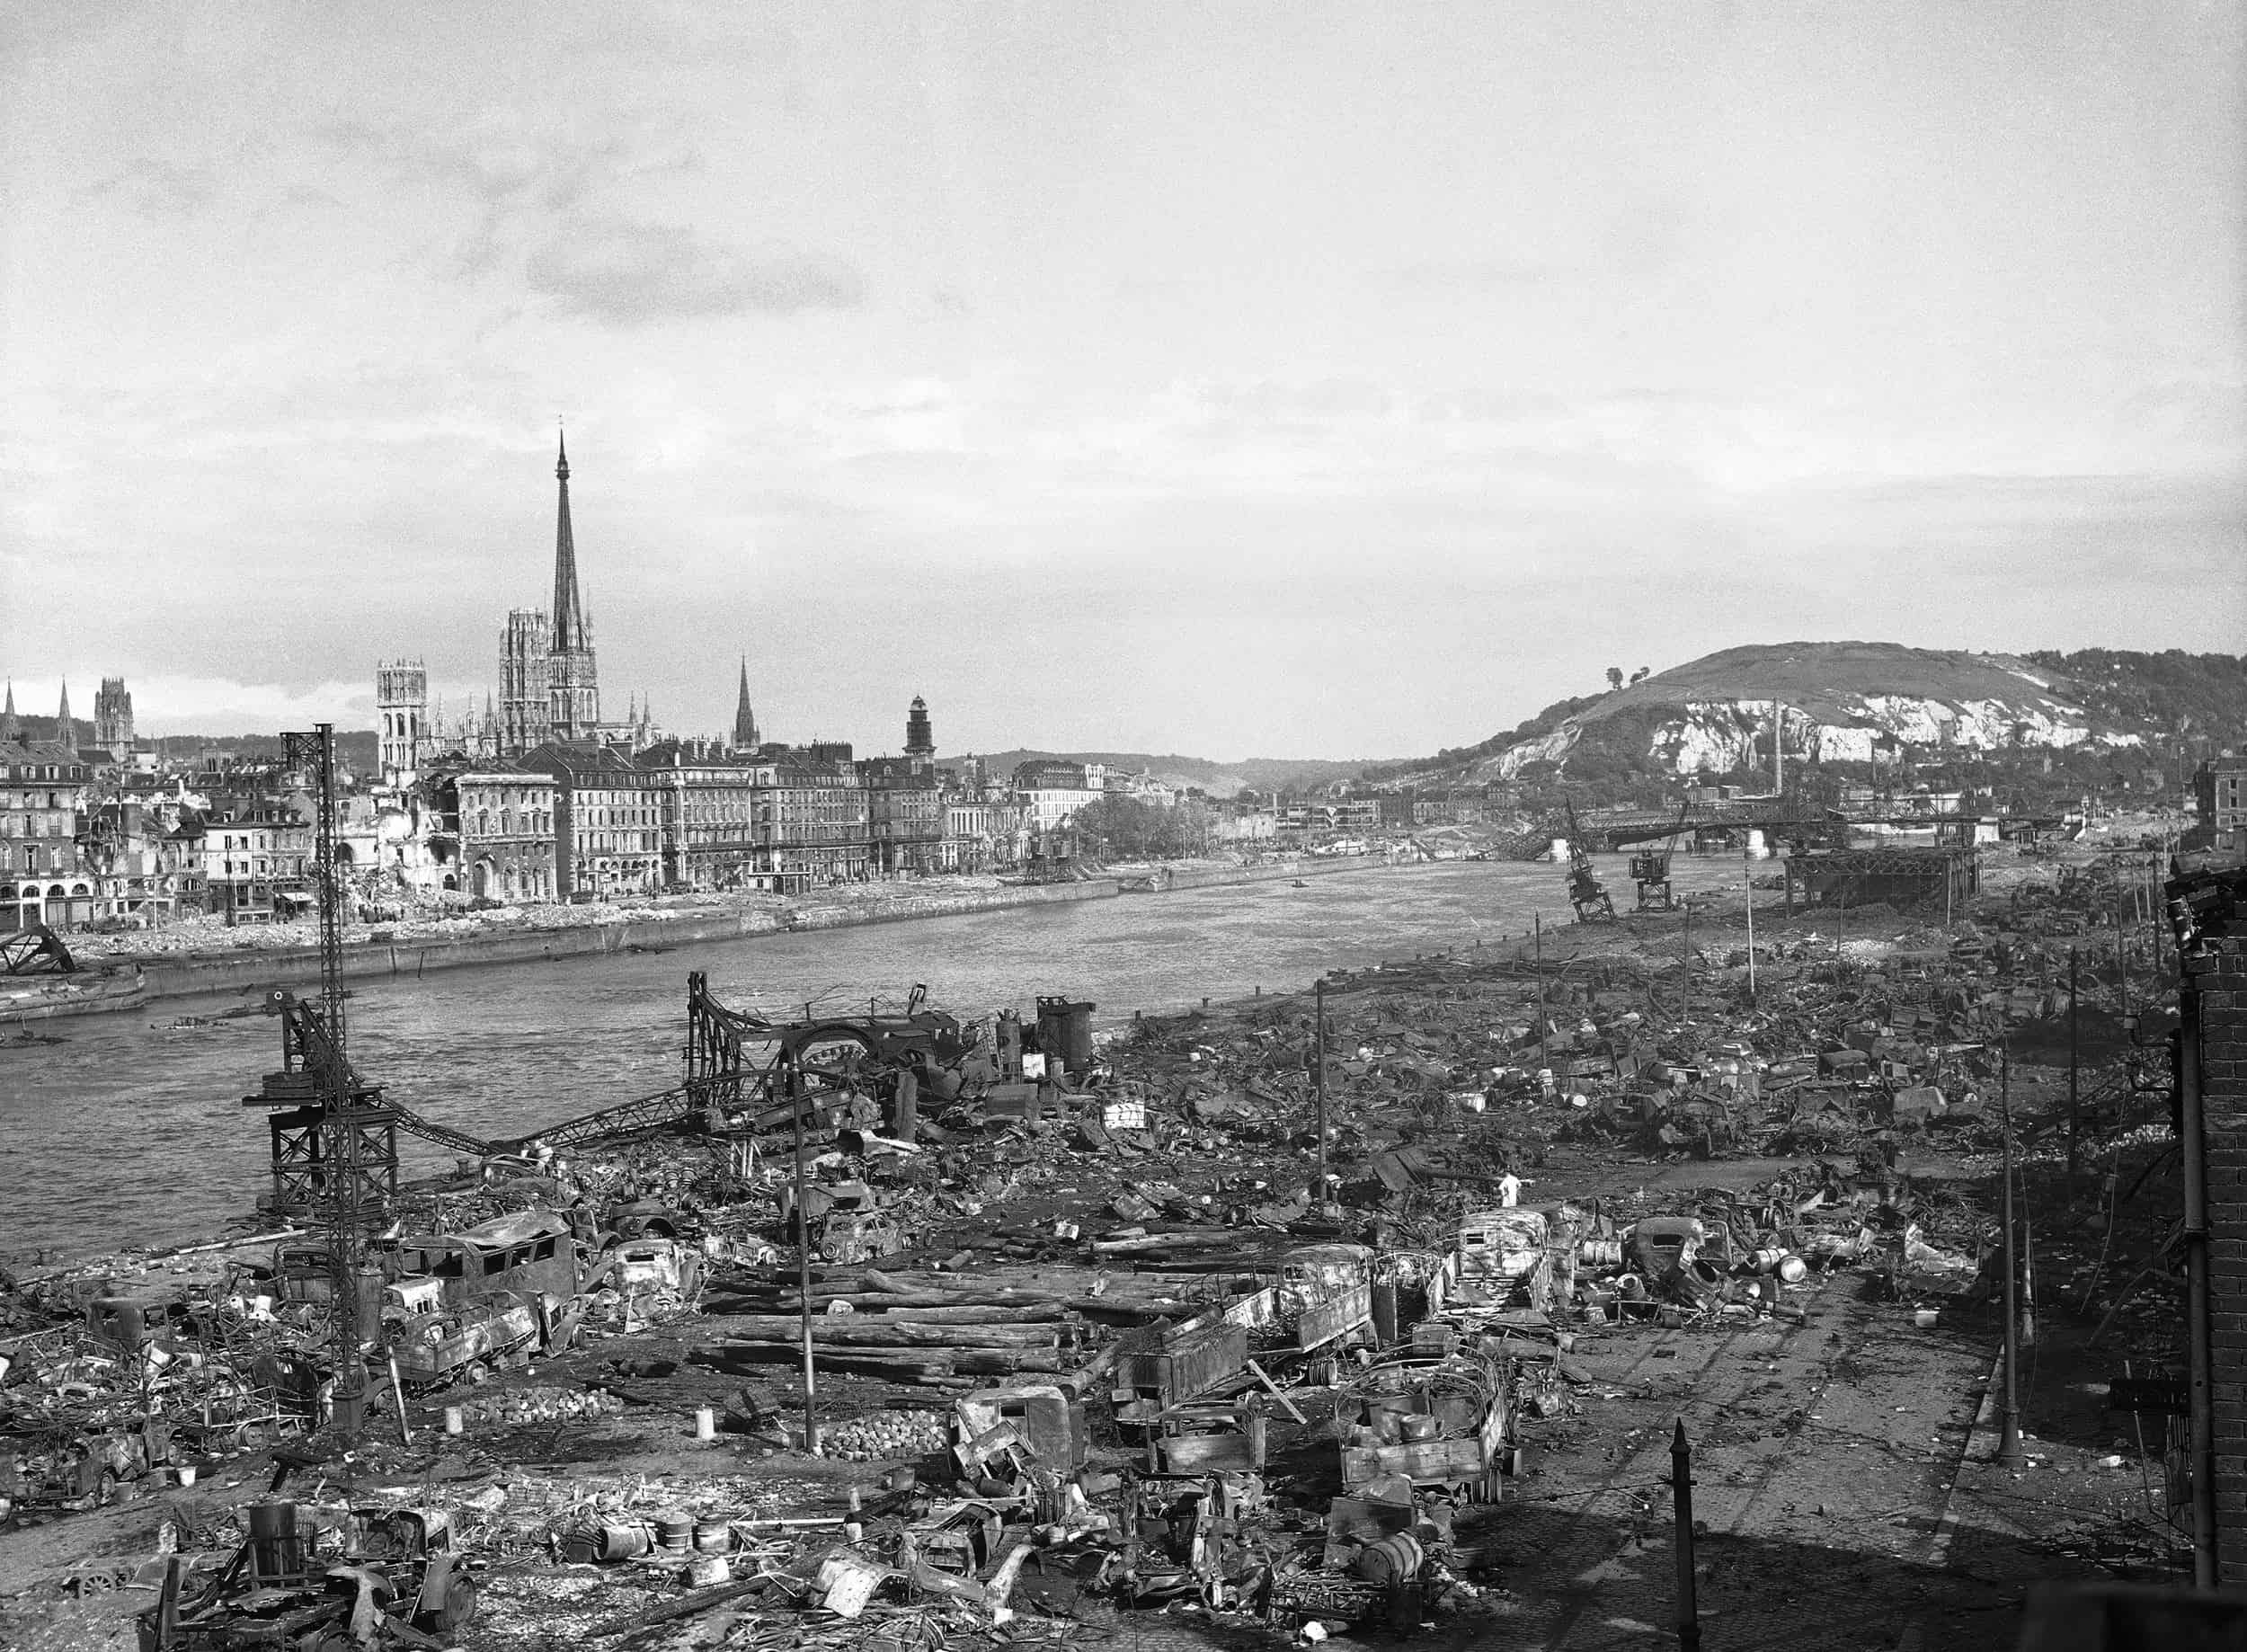 ARCHIVO - Rouen, una de las ciudades más marcadas de Francia, después de ser completamente liberada de los nazis, el 1 de septiembre de 1944. En los días posteriores al desembarco aliado en Normandía, Rouen fue sometida a intensos ataques aéreos debido a la hecho de que es el último punto en el que se ha cruzado el Sena. Además de estos daños, antes de abandonar la ciudad, los alemanes saquearon muchos edificios.